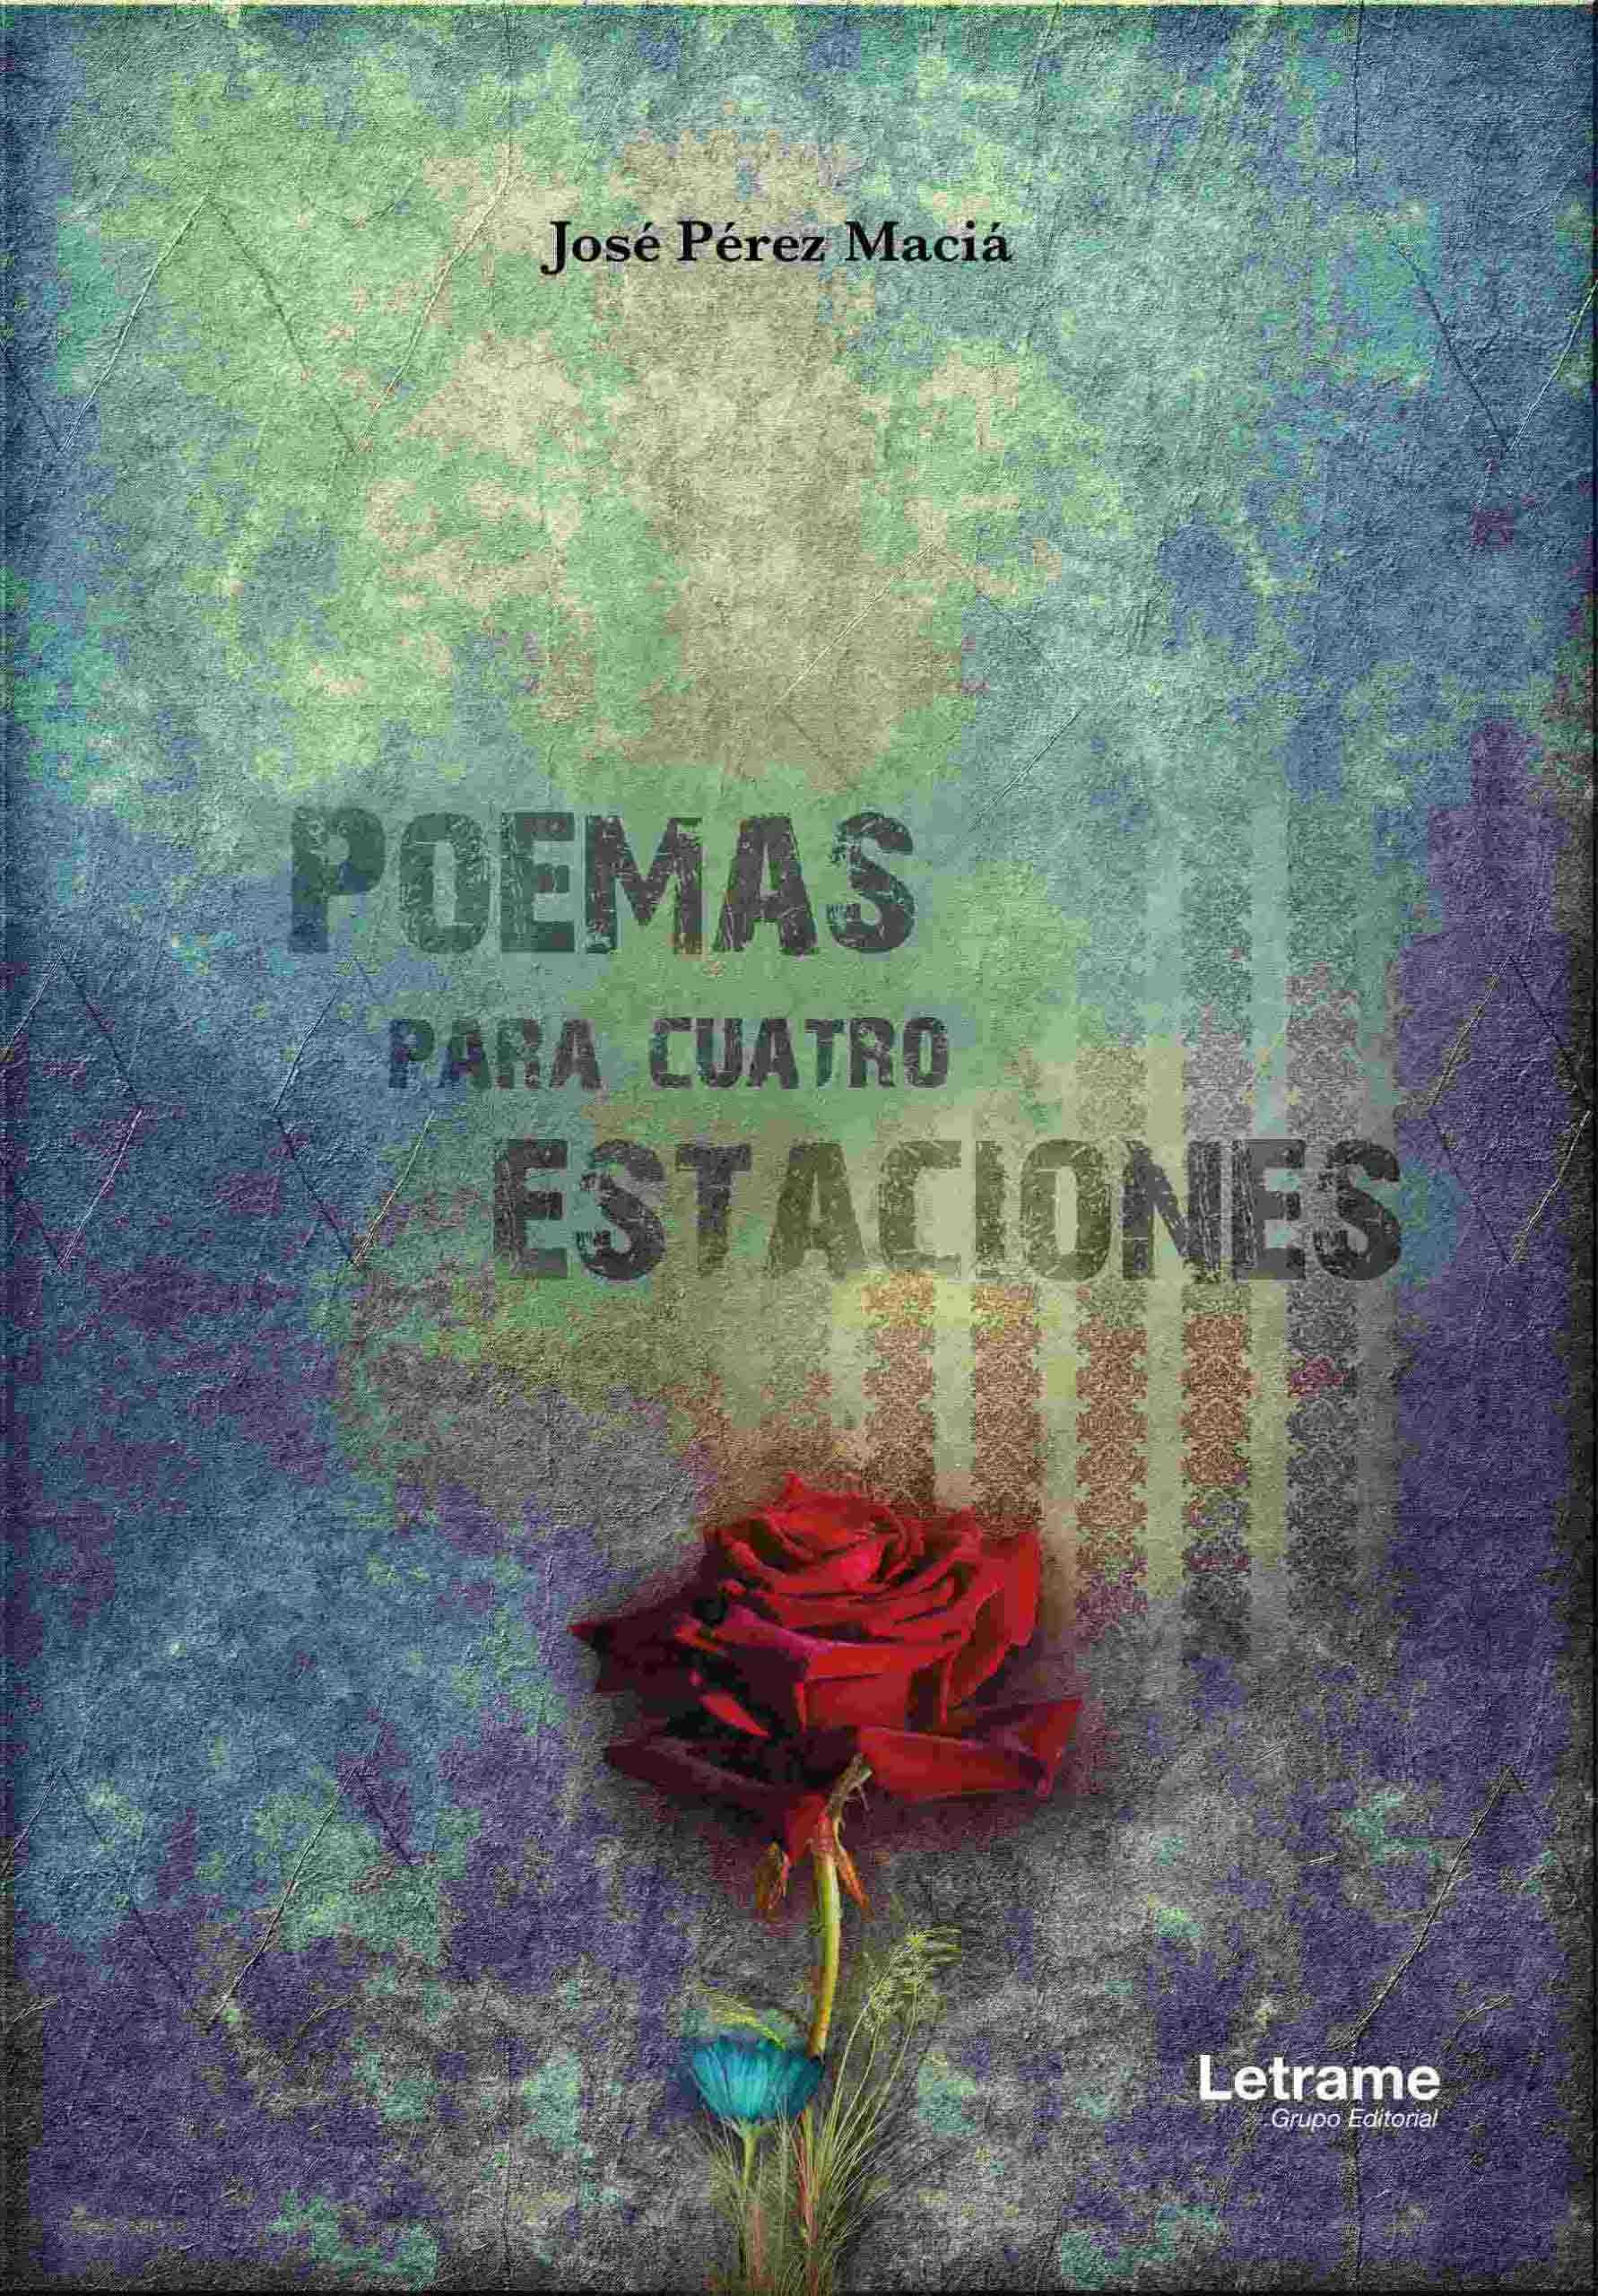 Poemas para cuatro estaciones - Letrame Grupo Editorial